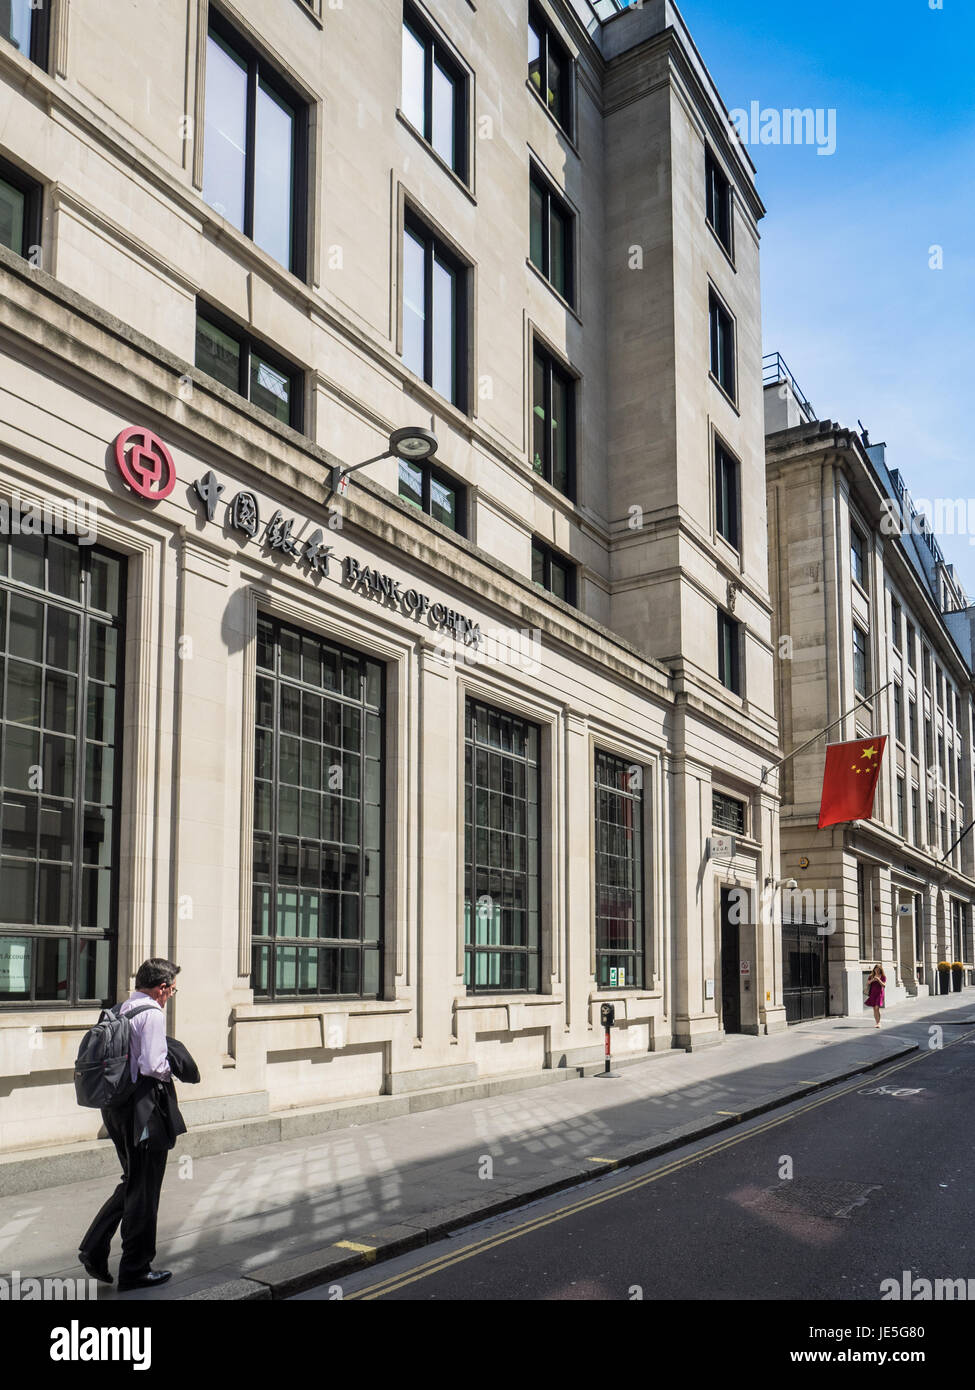 Un homme déambule au-delà de la Banque de Chine, des bureaux dans la ville de Londres dans le quartier financier de Londres, Royaume-Uni Banque D'Images